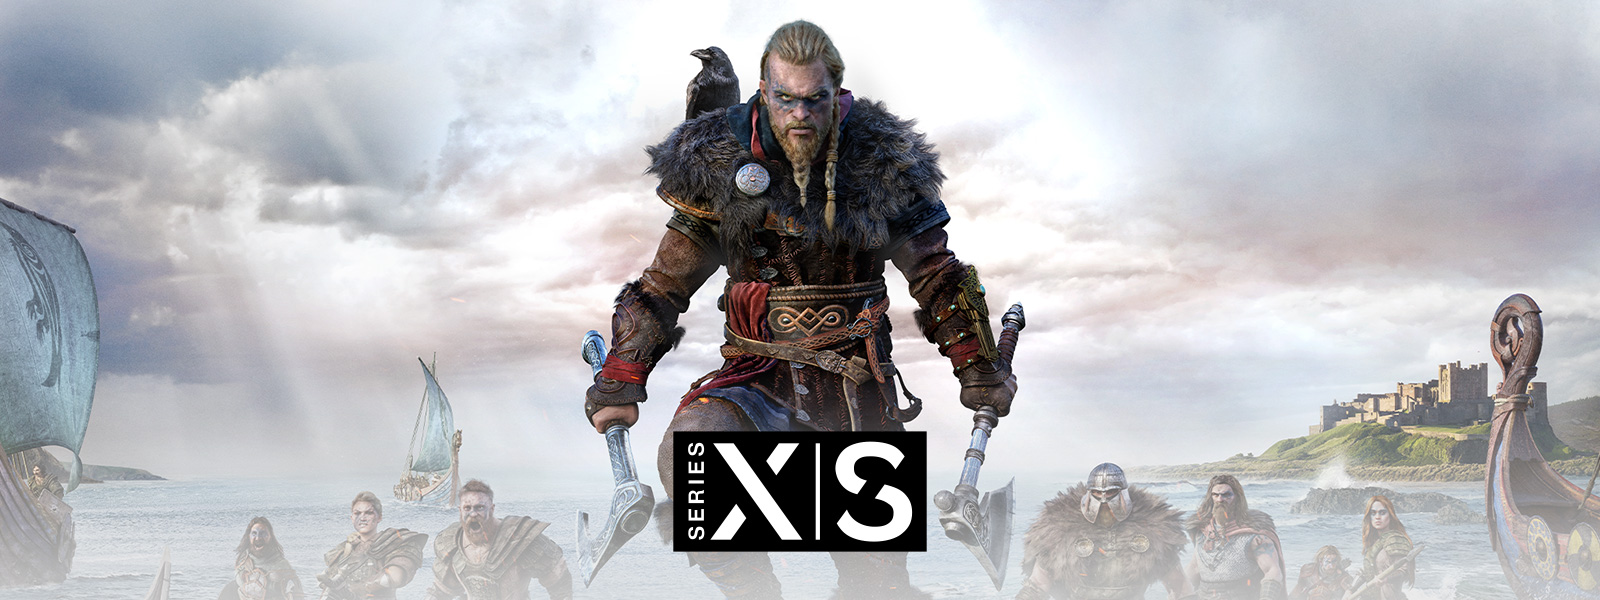 Assassin’s Creed Valhalla, Xbox Series X|S, Le Viking légendaire Eivor dirige son armée dans la bataille.